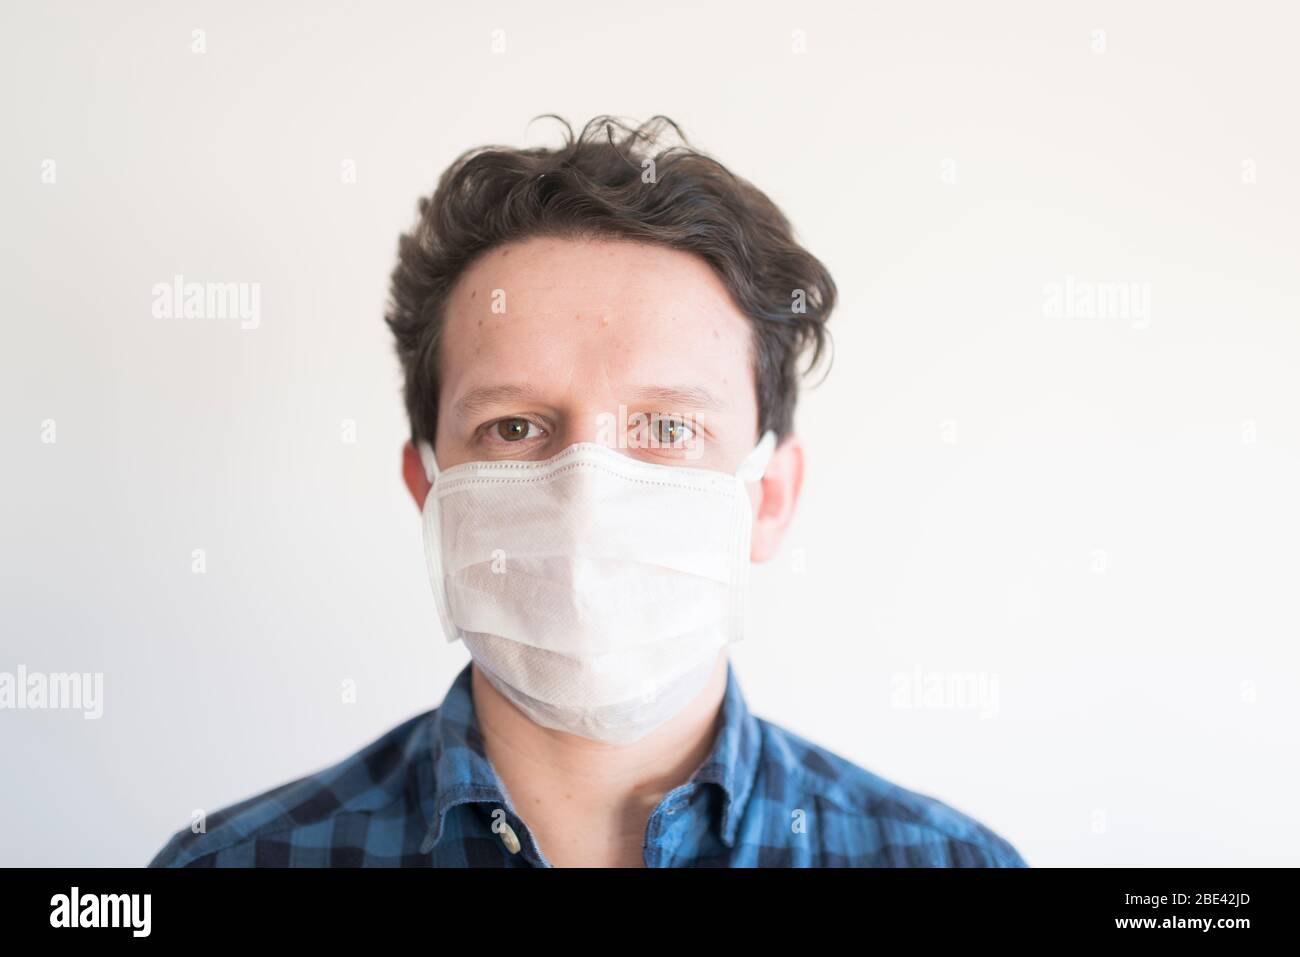 Ritratto frontale di un giovane che indossa una maschera facciale monouso, per prevenire la diffusione della malattia di coronavirus, Covid-19 Foto Stock